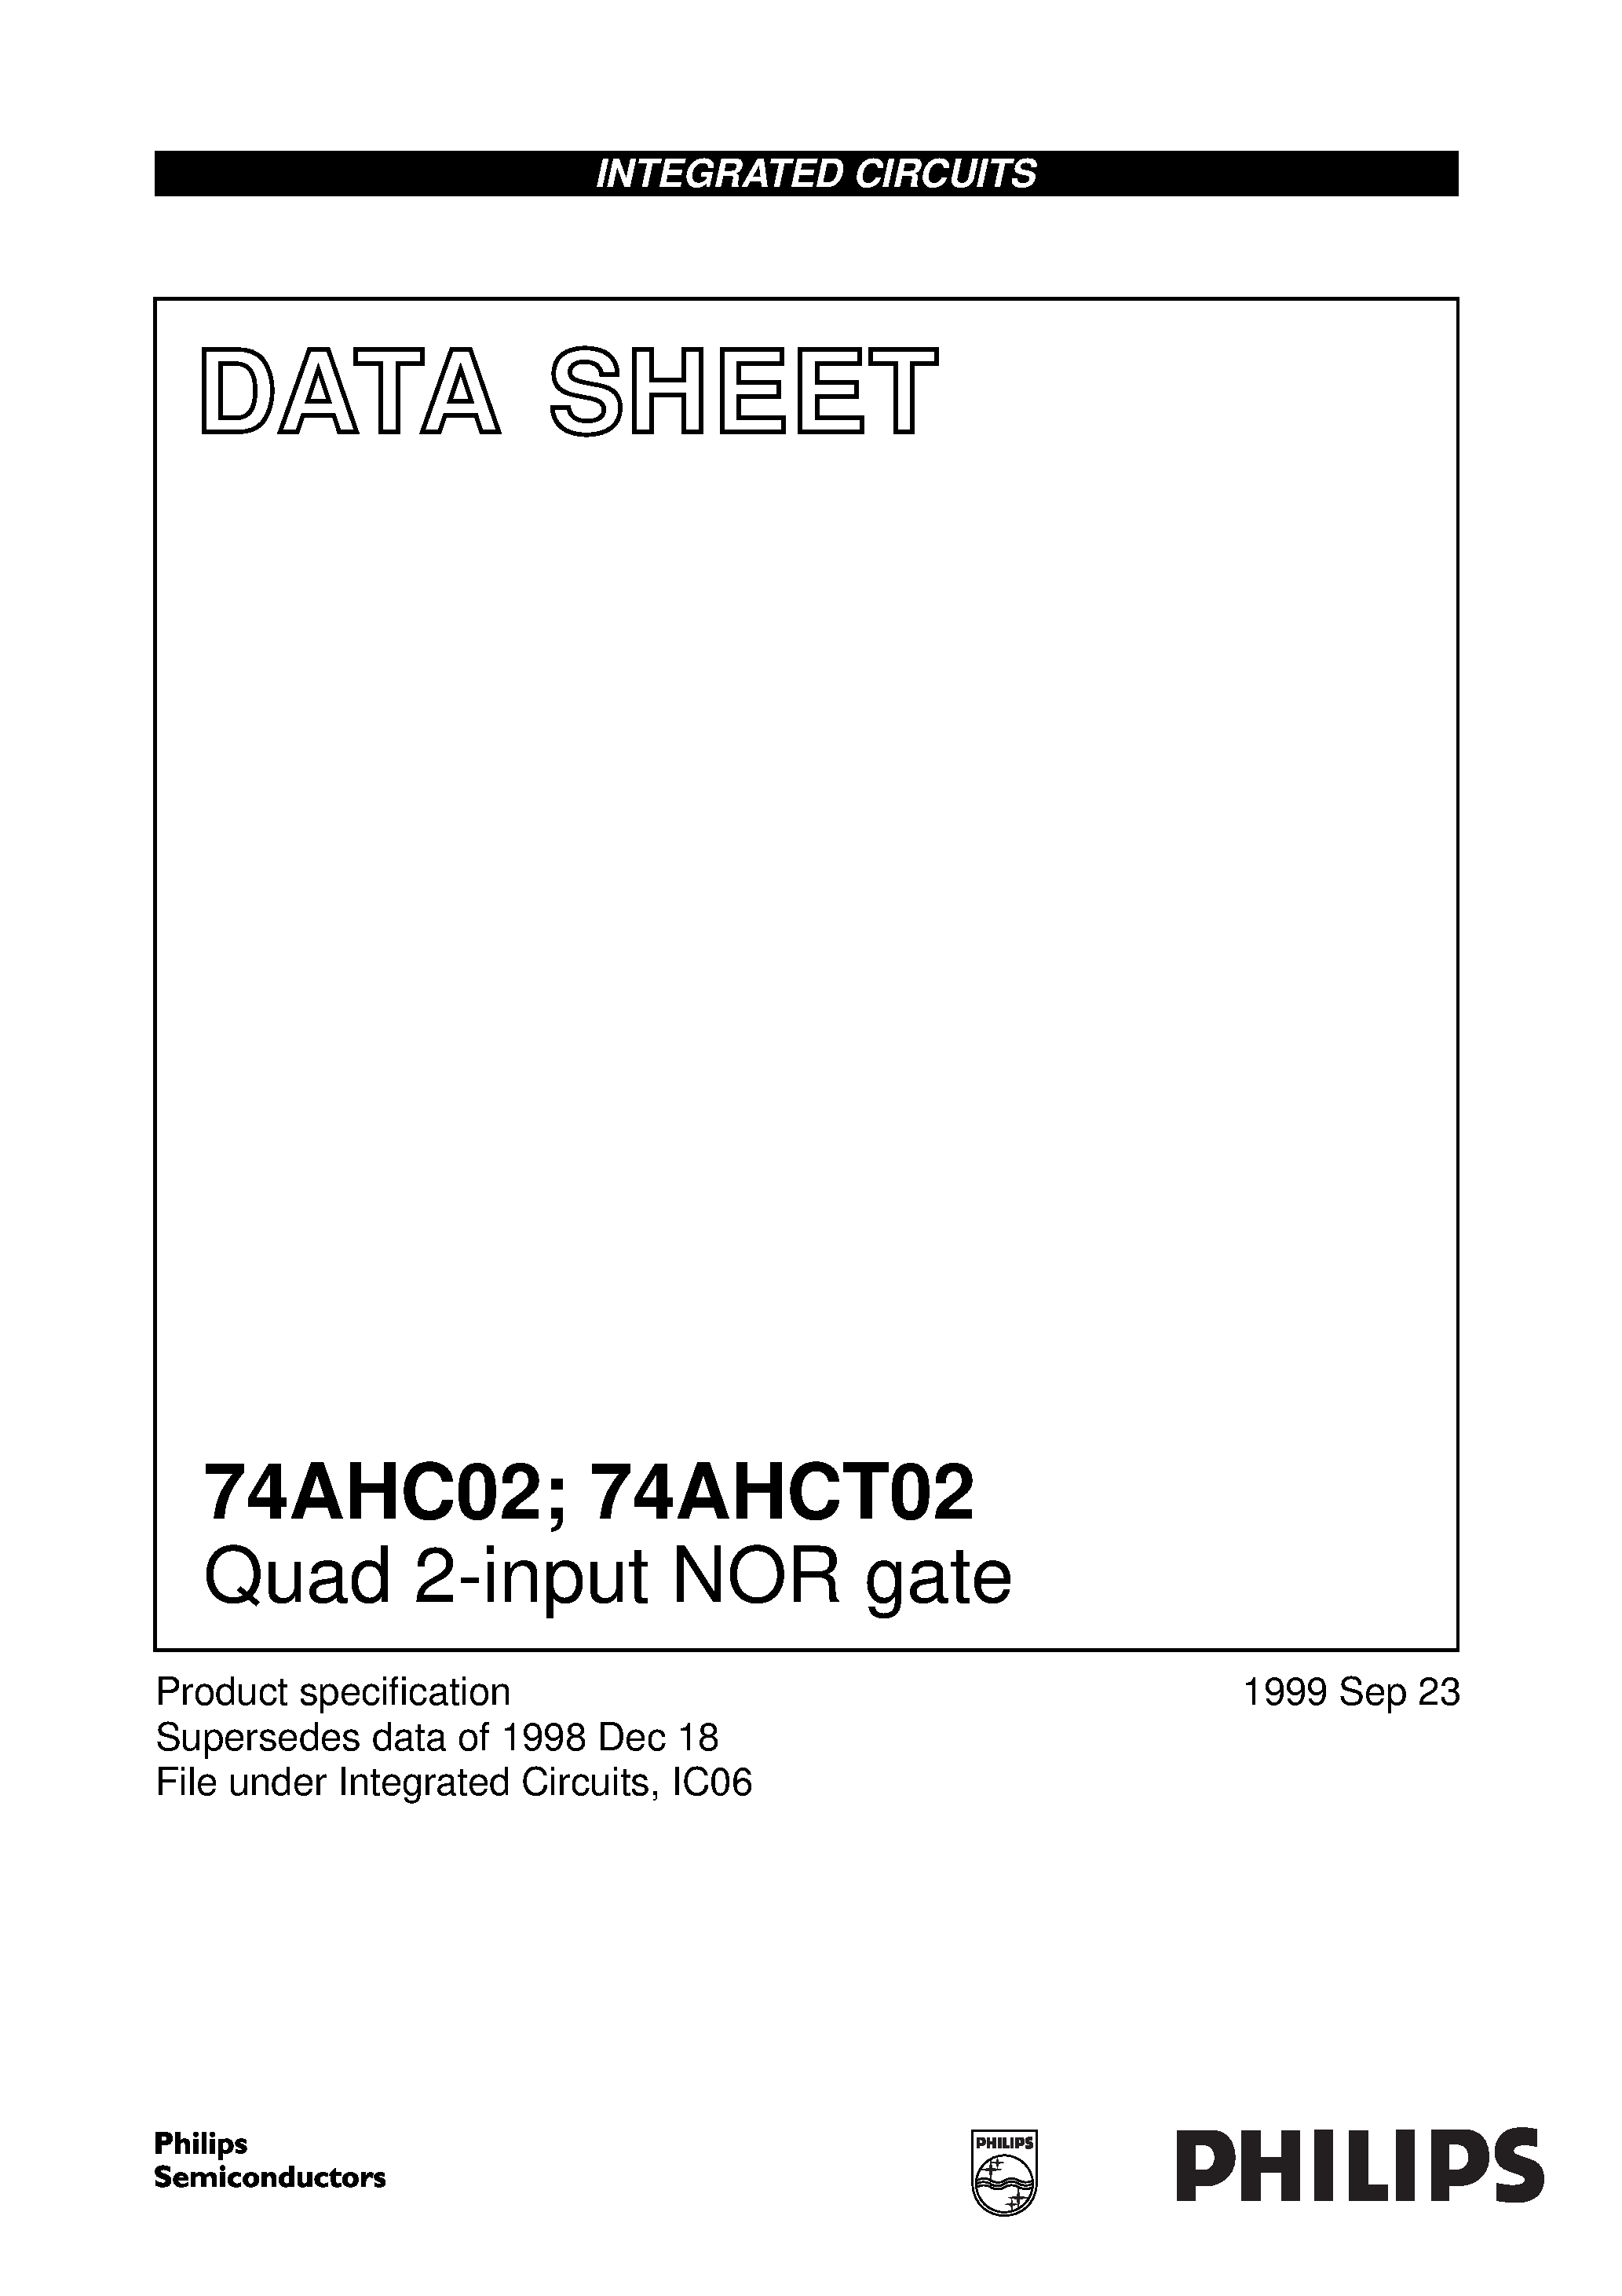 Даташит 74AHC02PW - Quad 2-input NOR gate страница 1